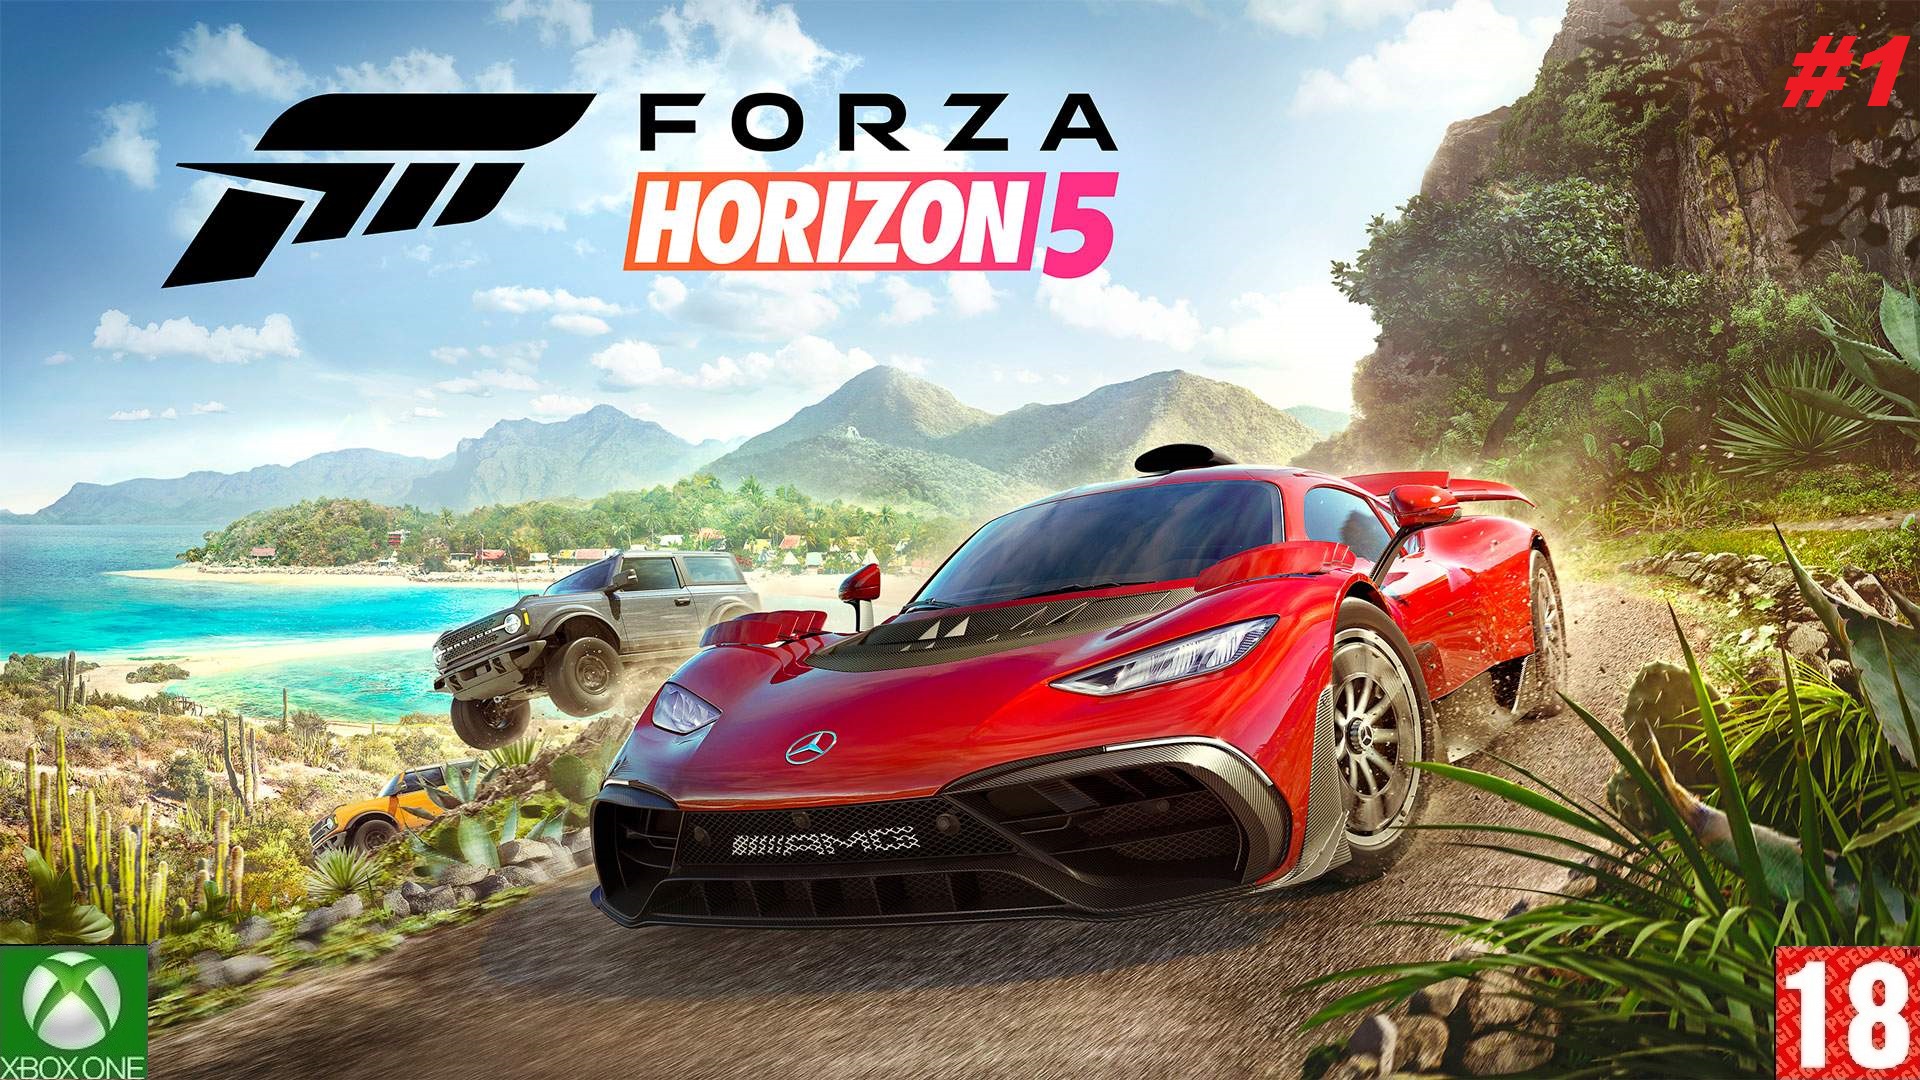 Forza Horizon 5 (Xbox One) - Прохождение - #1, Добро пожаловать в Мексику. (без комментариев).